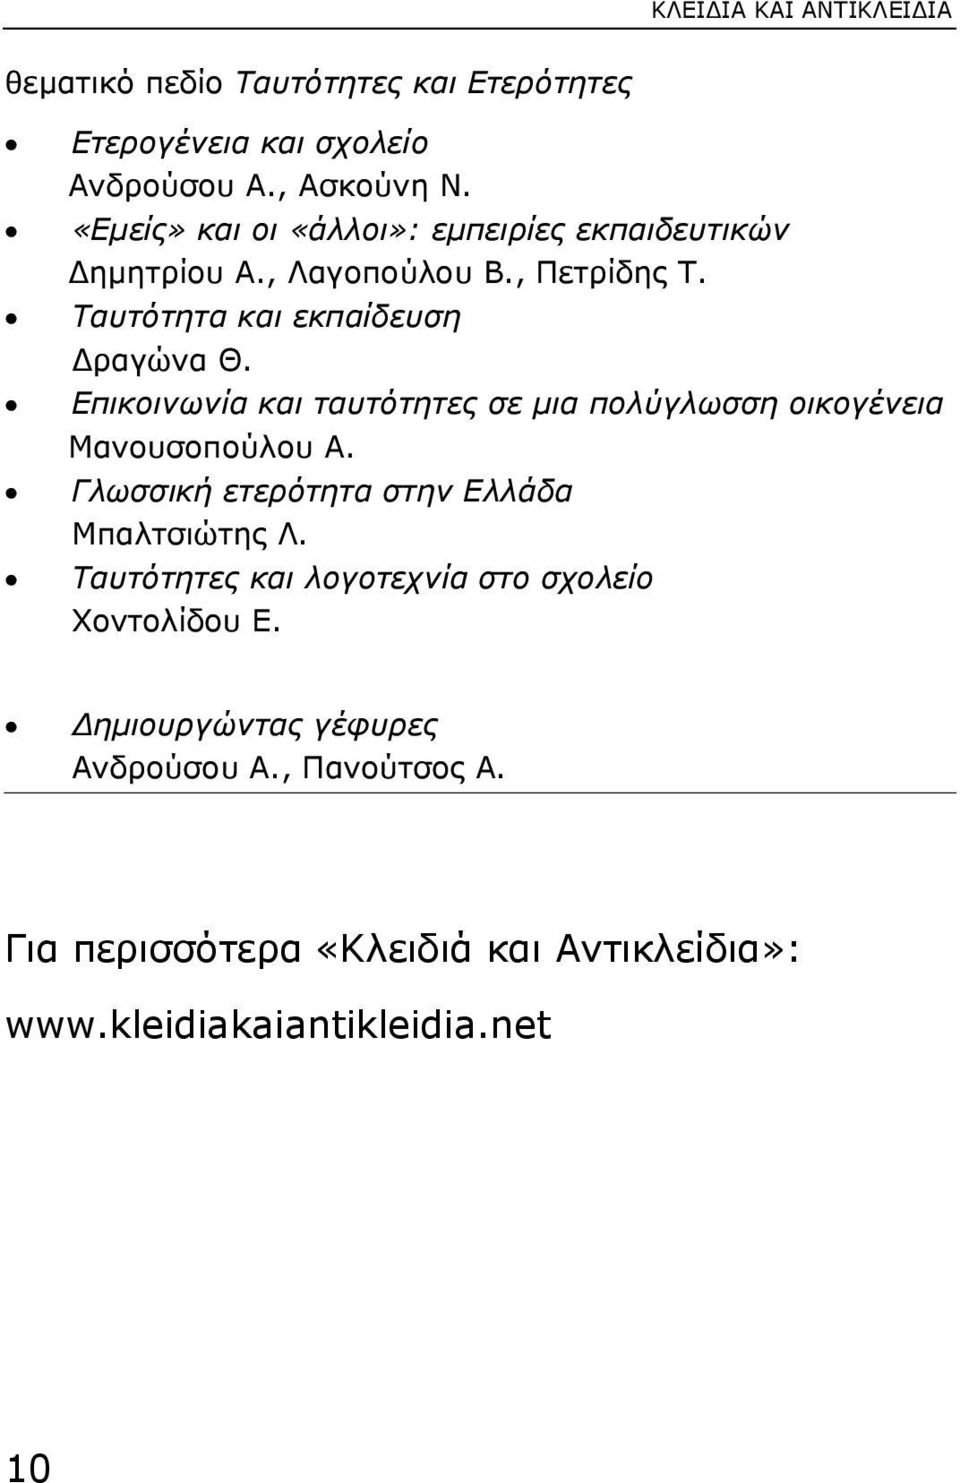 Επικοινωνία και ταυτότητες σε µια πολύγλωσση οικογένεια Μανουσοπούλου Α. Γλωσσική ετερότητα στην Ελλάδα Μπαλτσιώτης Λ.